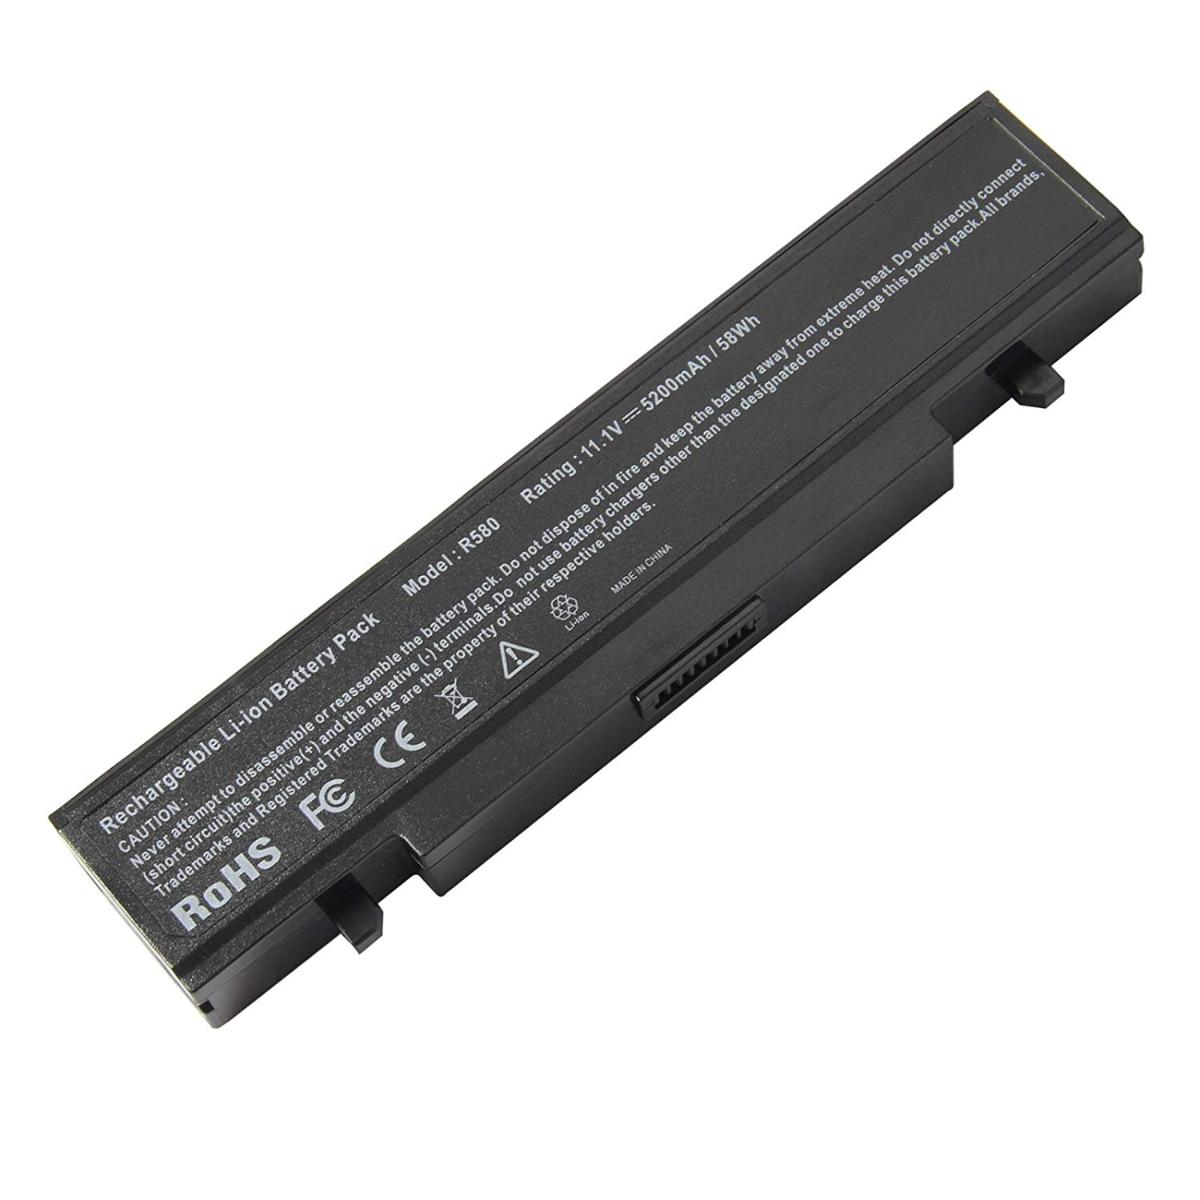 Μπαταρία Laptop - Battery for Samsung R430 OEM υψηλής ποιότητας - high quality (Κωδ.
1-BAT0060(4.4Ah))